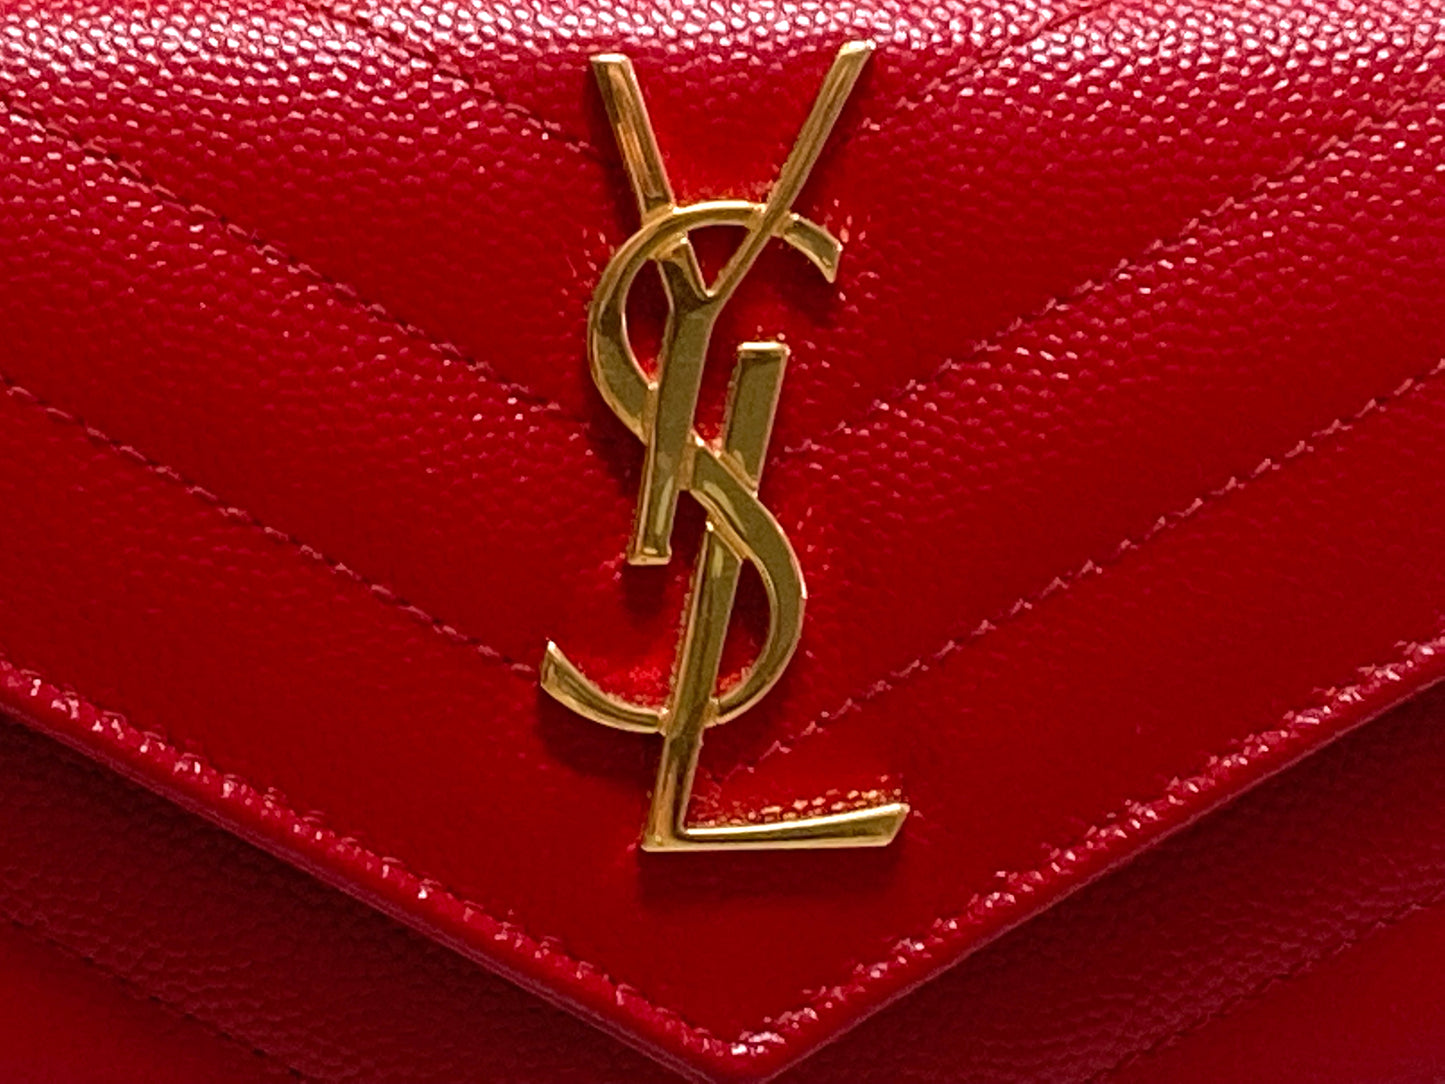 YVES SAINT LAURENT Leather Cassandre Matelasse Envelope Wallet Red